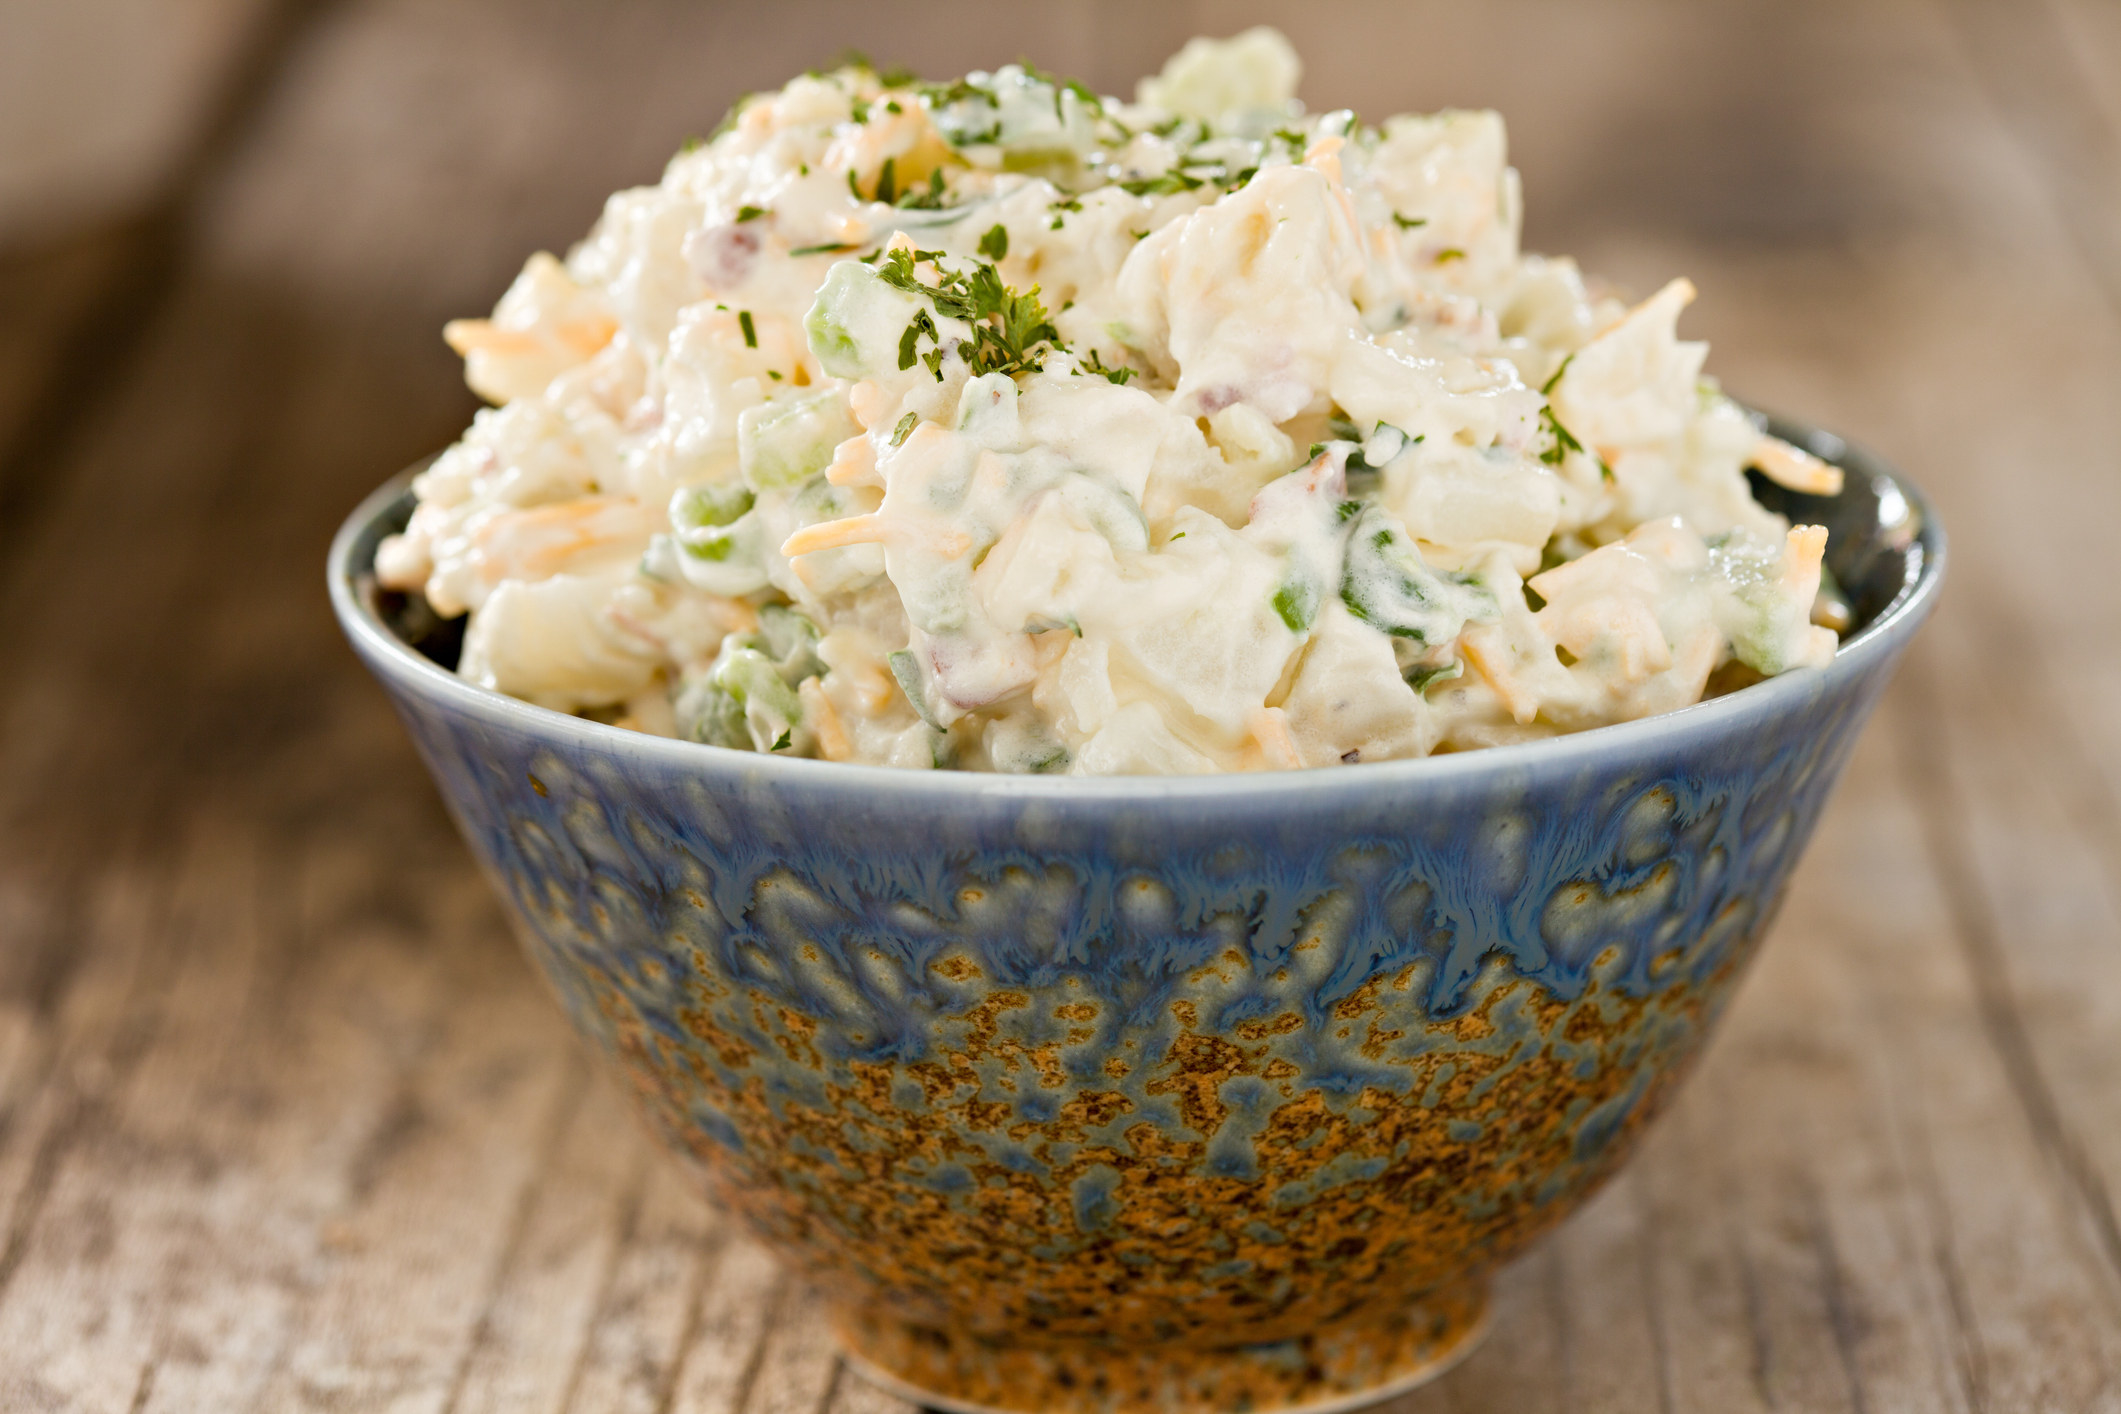 A bowl of creamy potato salad.